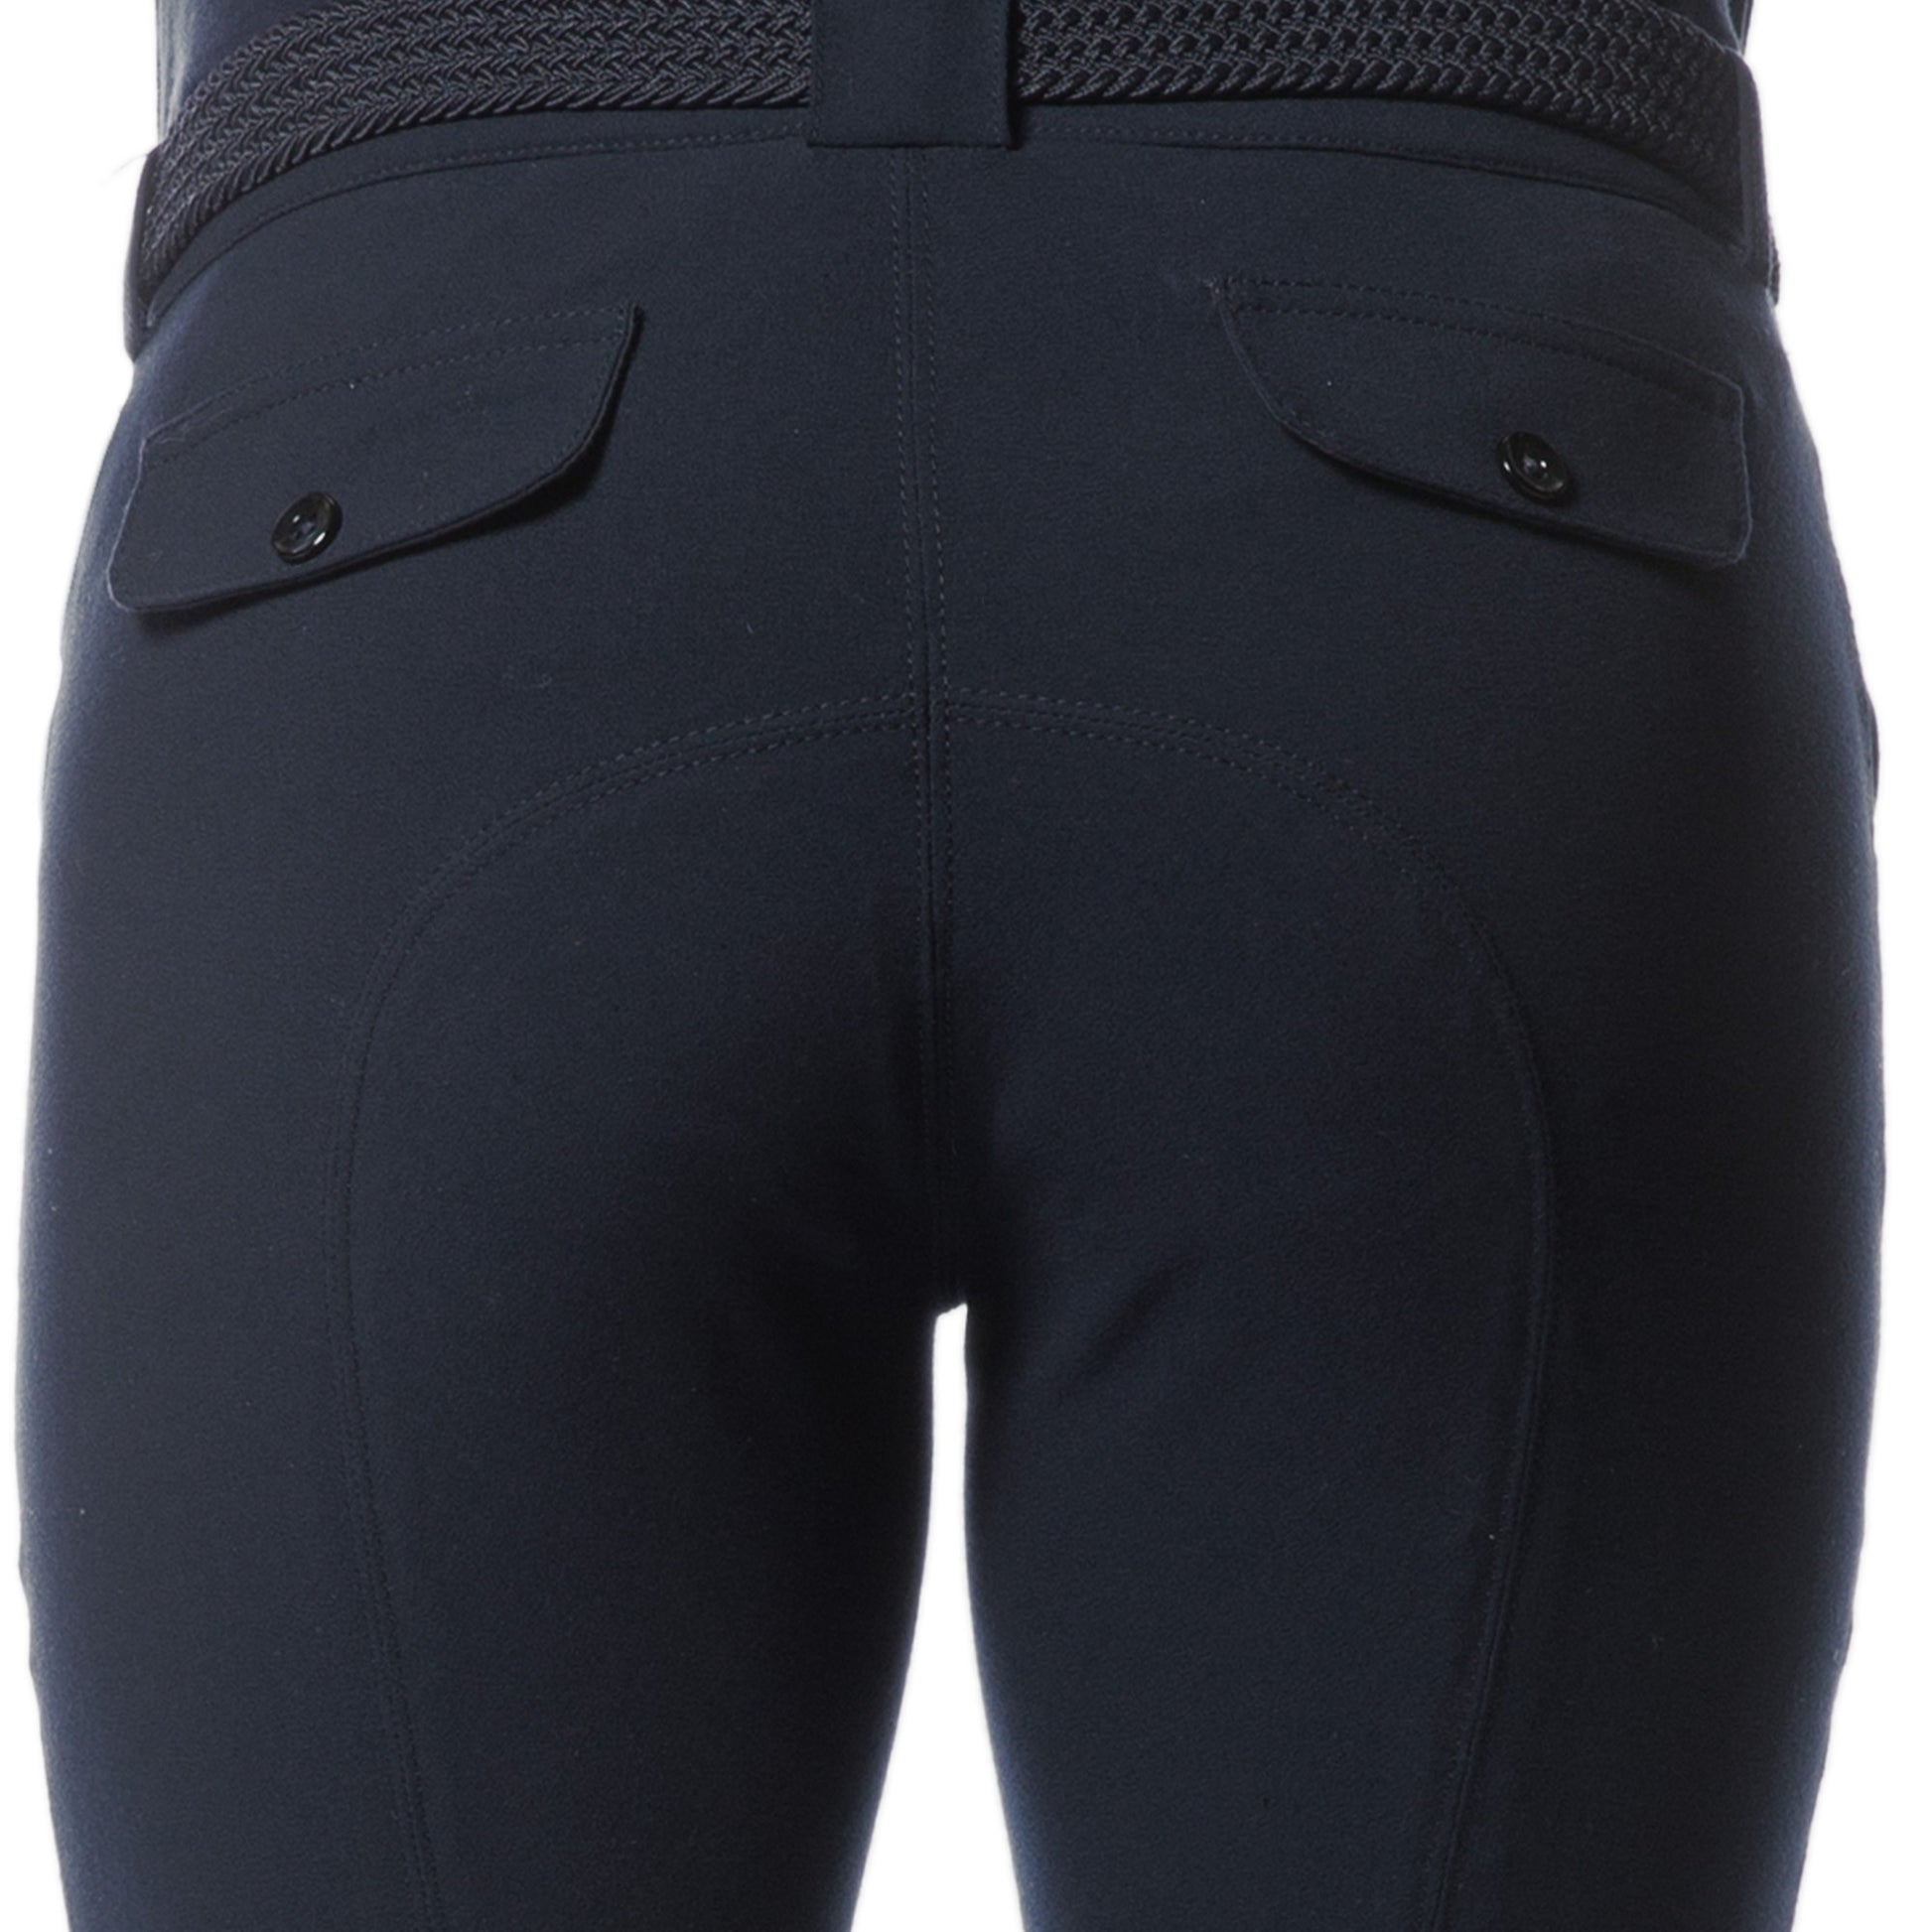 Pantalon d'équitation pour garçons de 10 à 16 ans Canter Collioure marine détail poches factices arrière